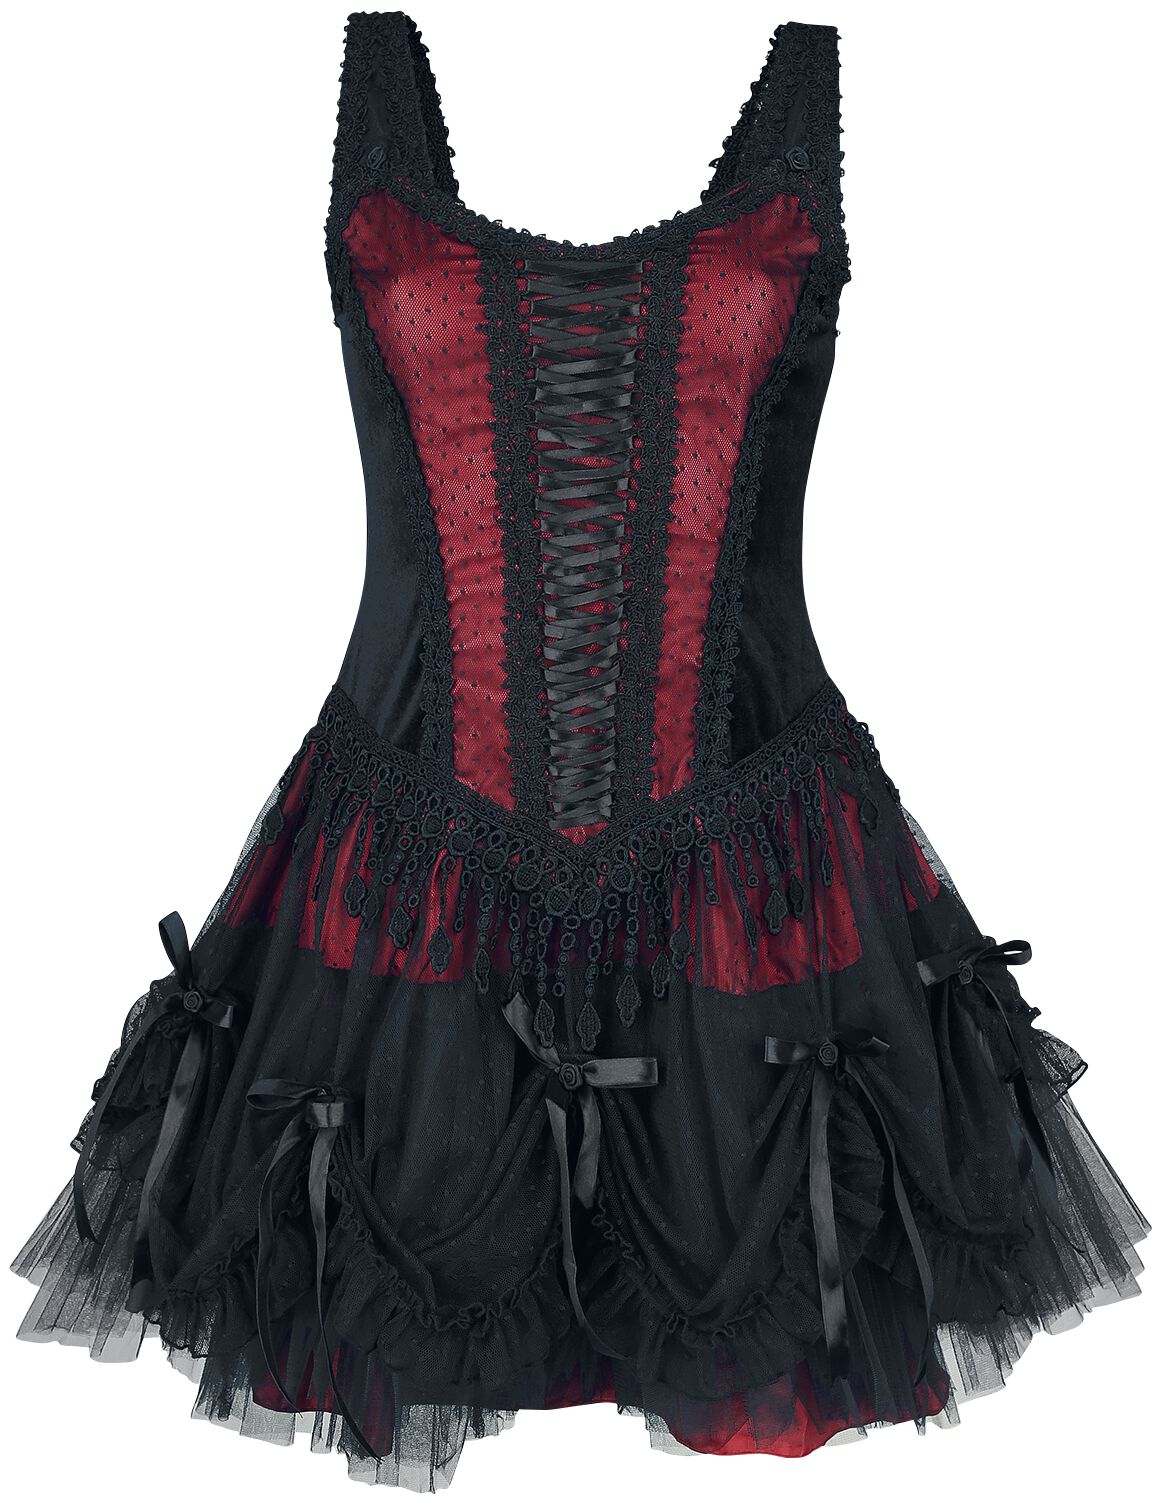 Sinister Gothic Minidress Short dress red